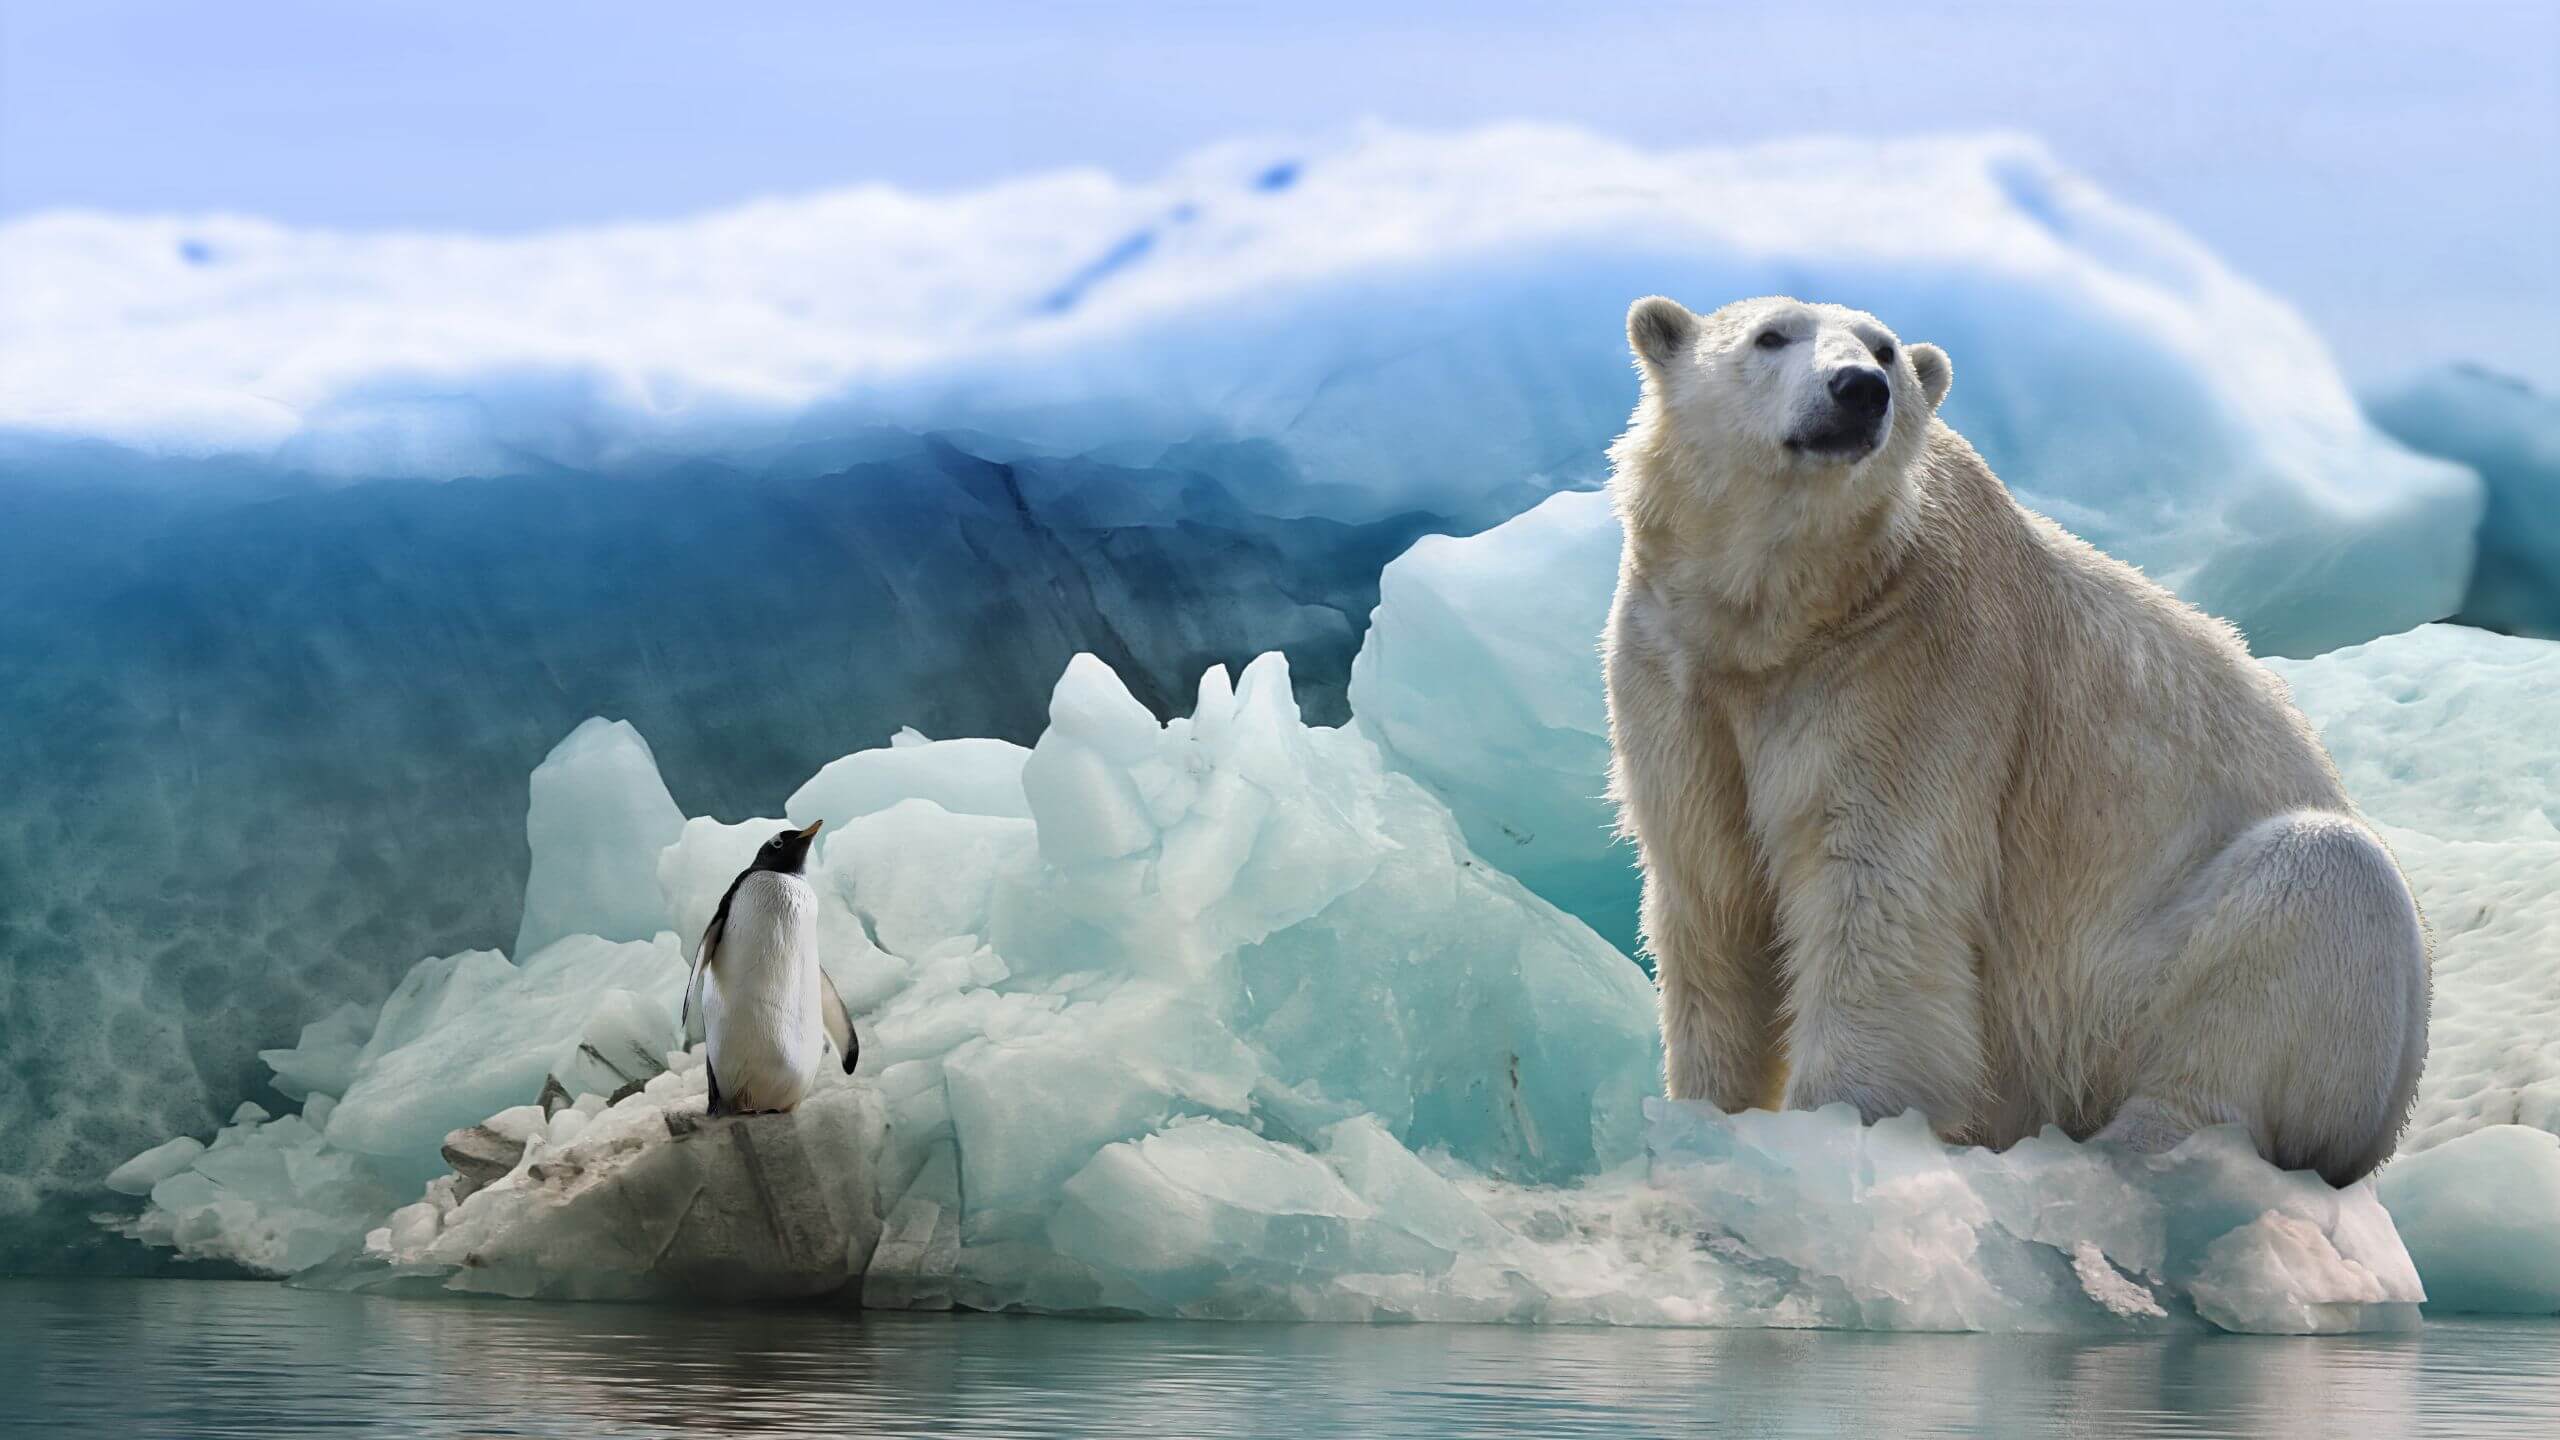 Polar bear and penguin sitting on an iceberg